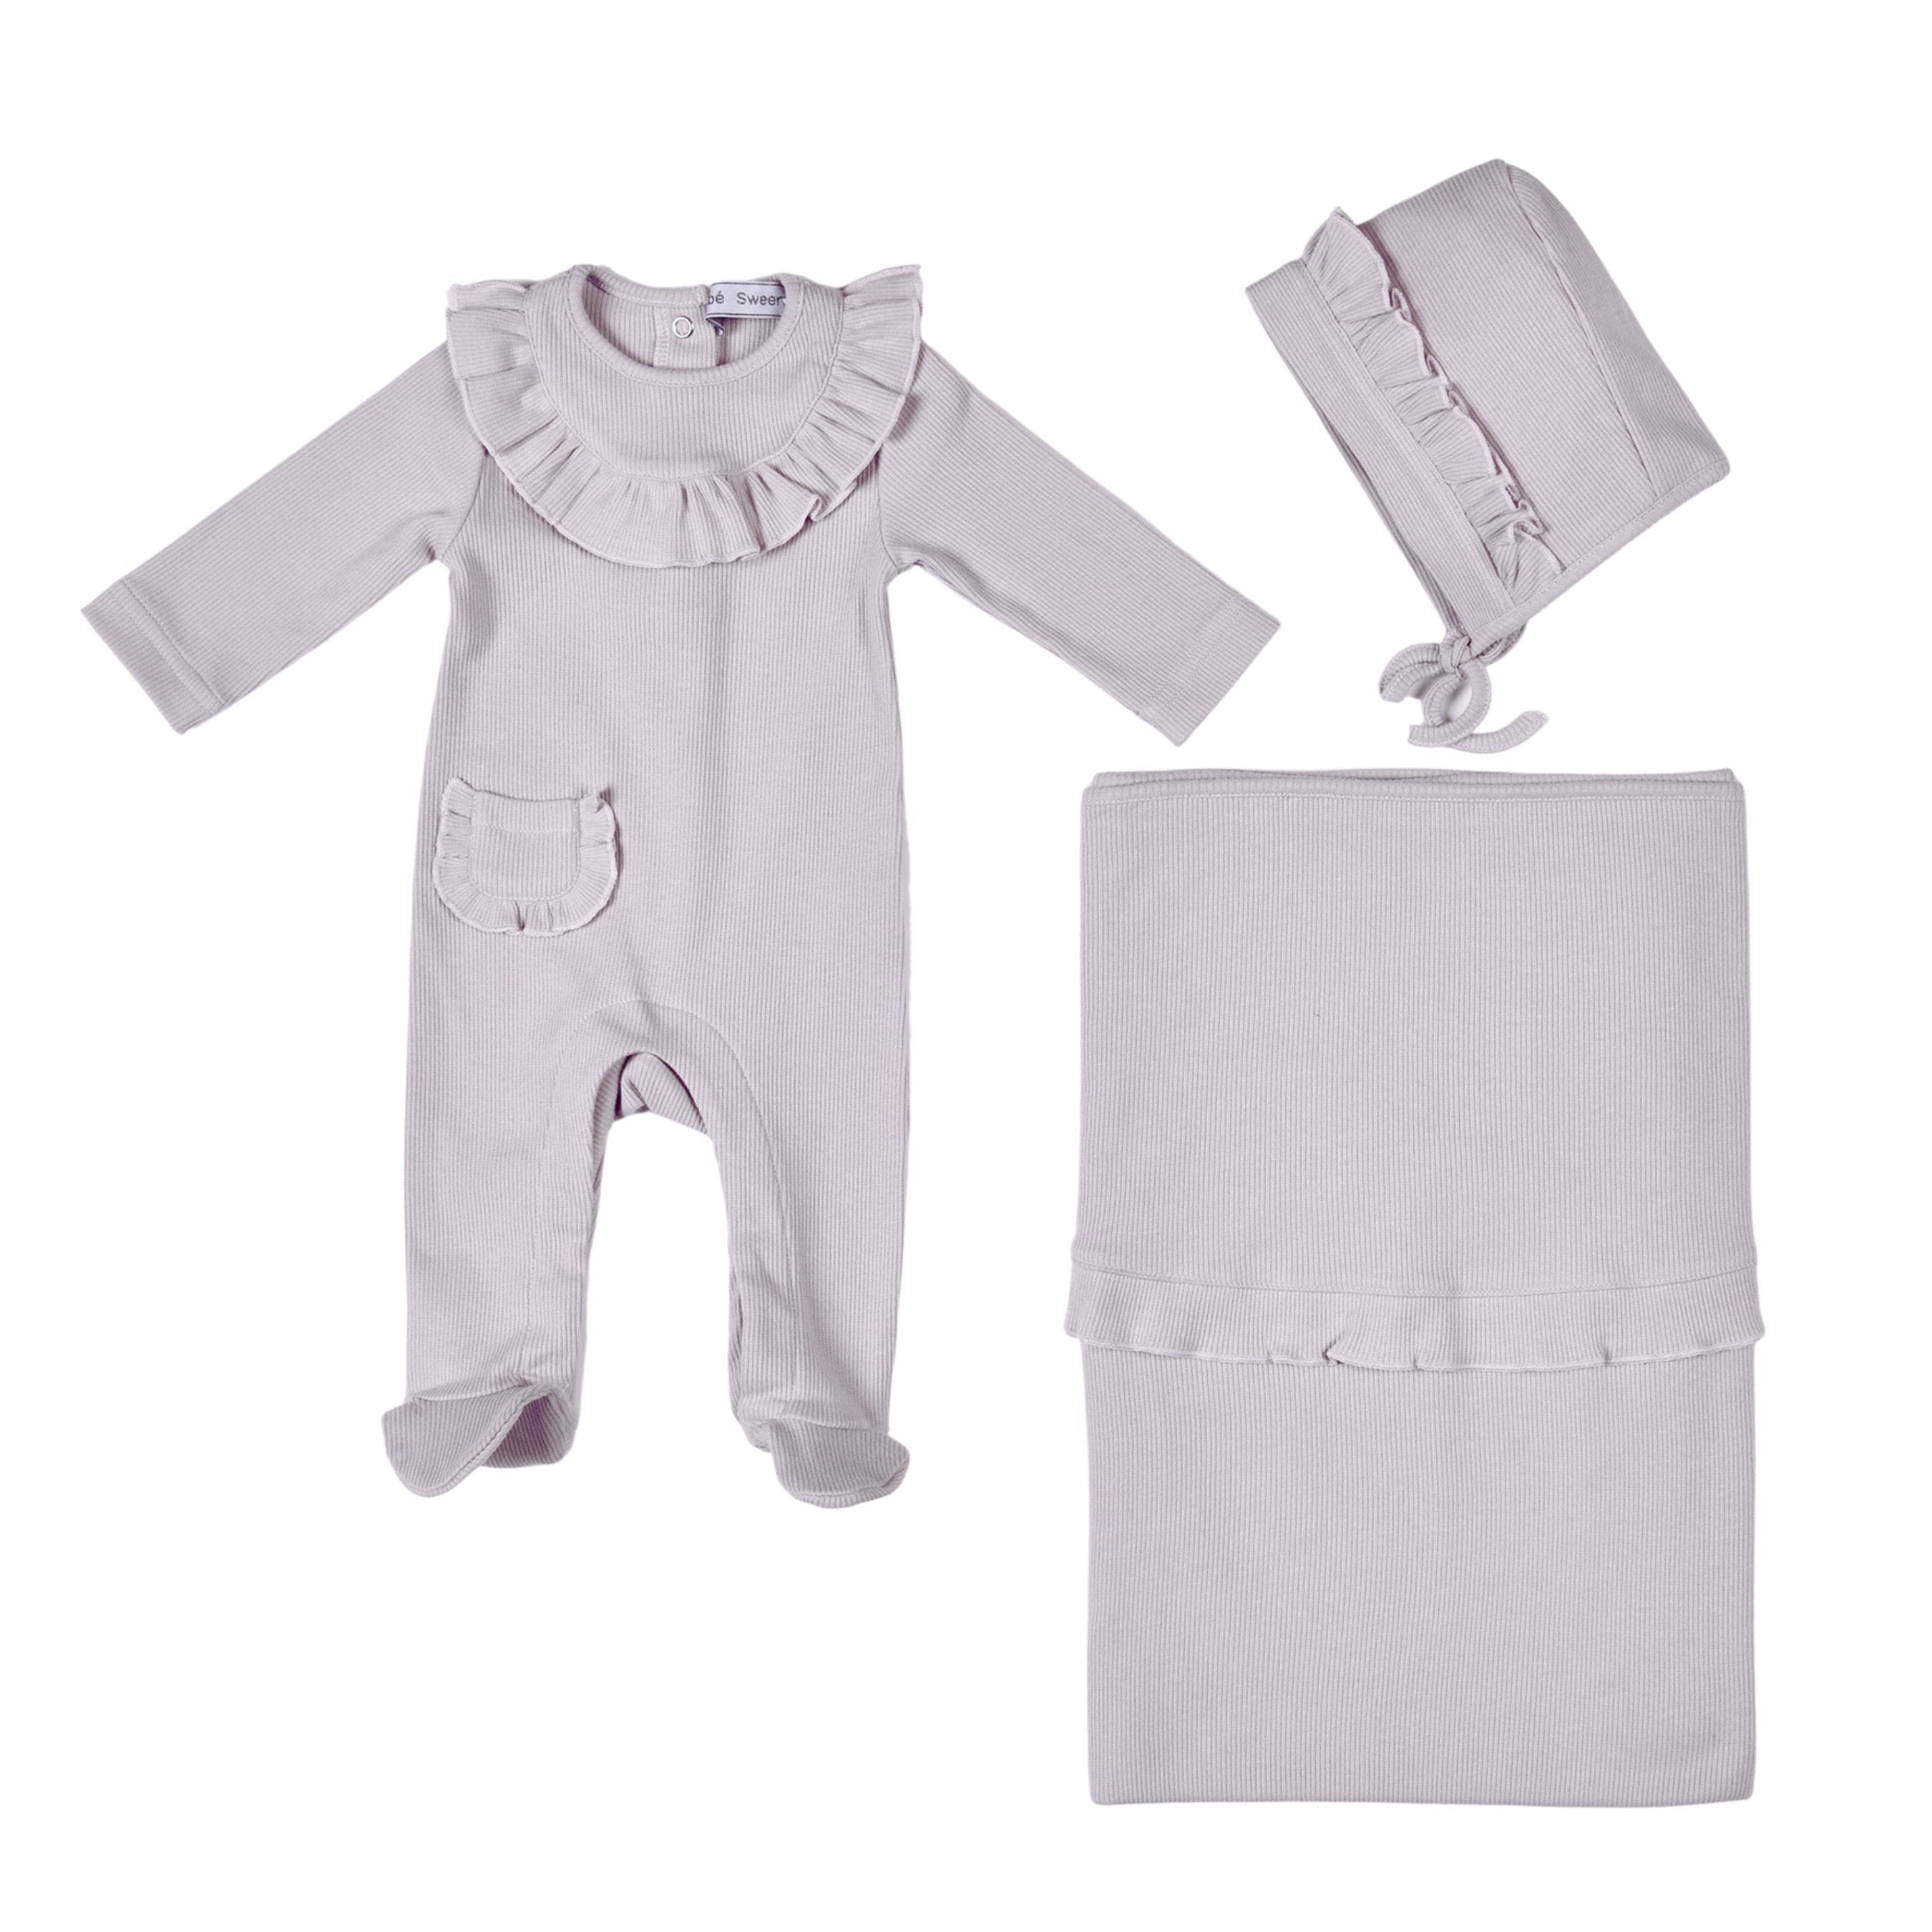 Emilia | Baby Girls Gift Box I Lilac Ribbed Cotton Set